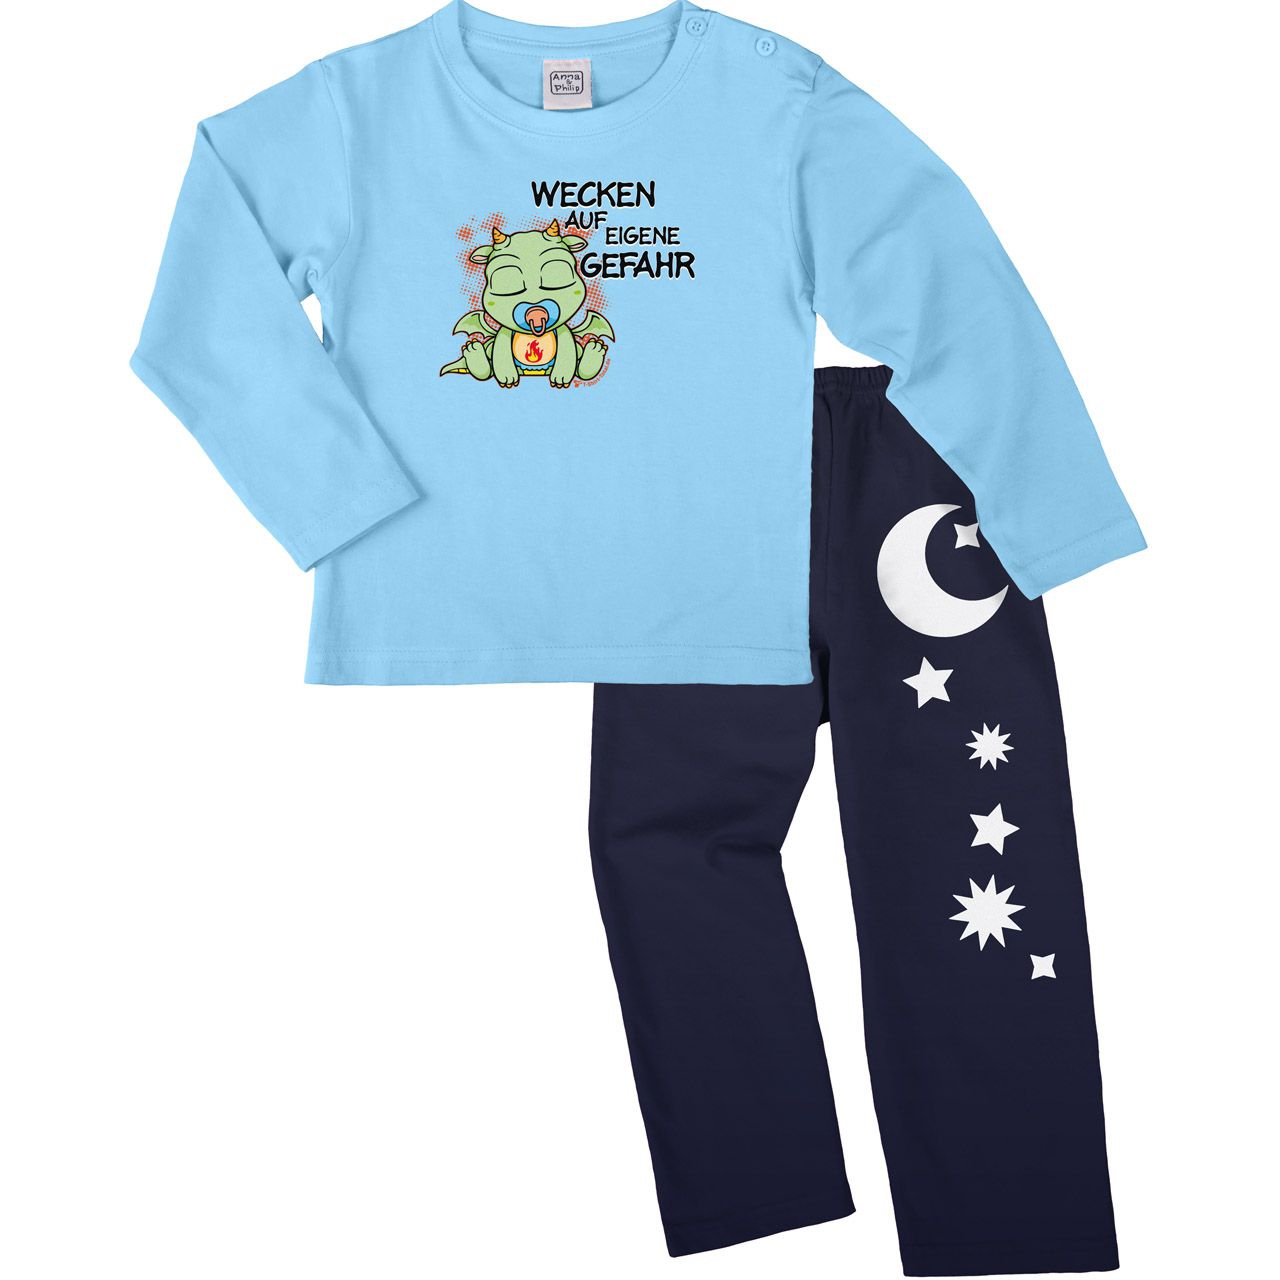 Drachen wecken Pyjama Set hellblau / navy 110 / 116